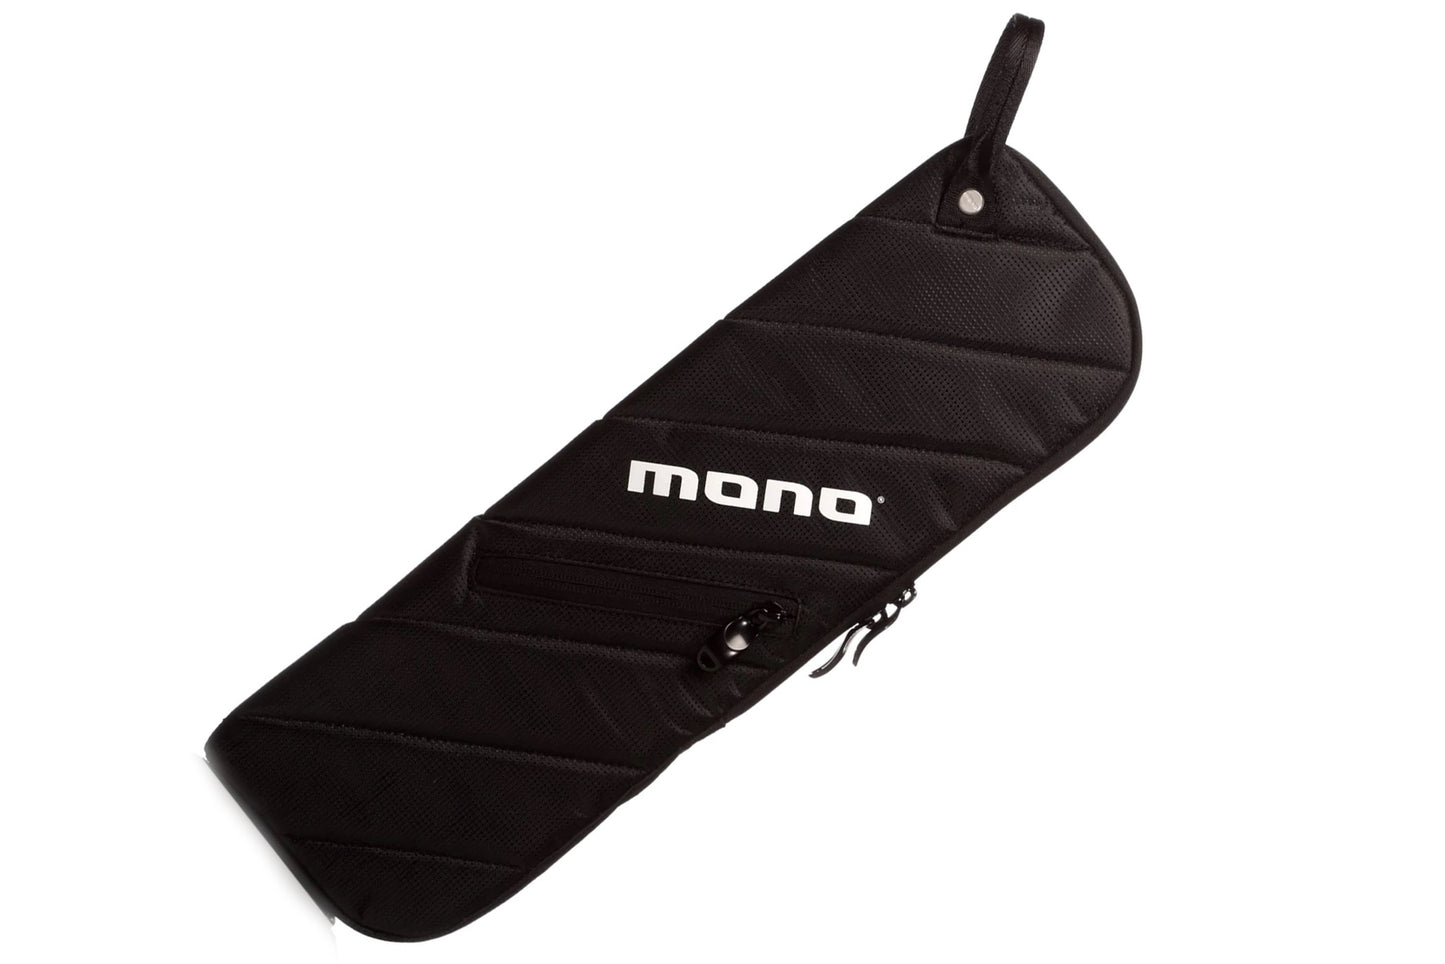 Mono Shogun Stick Case, Black